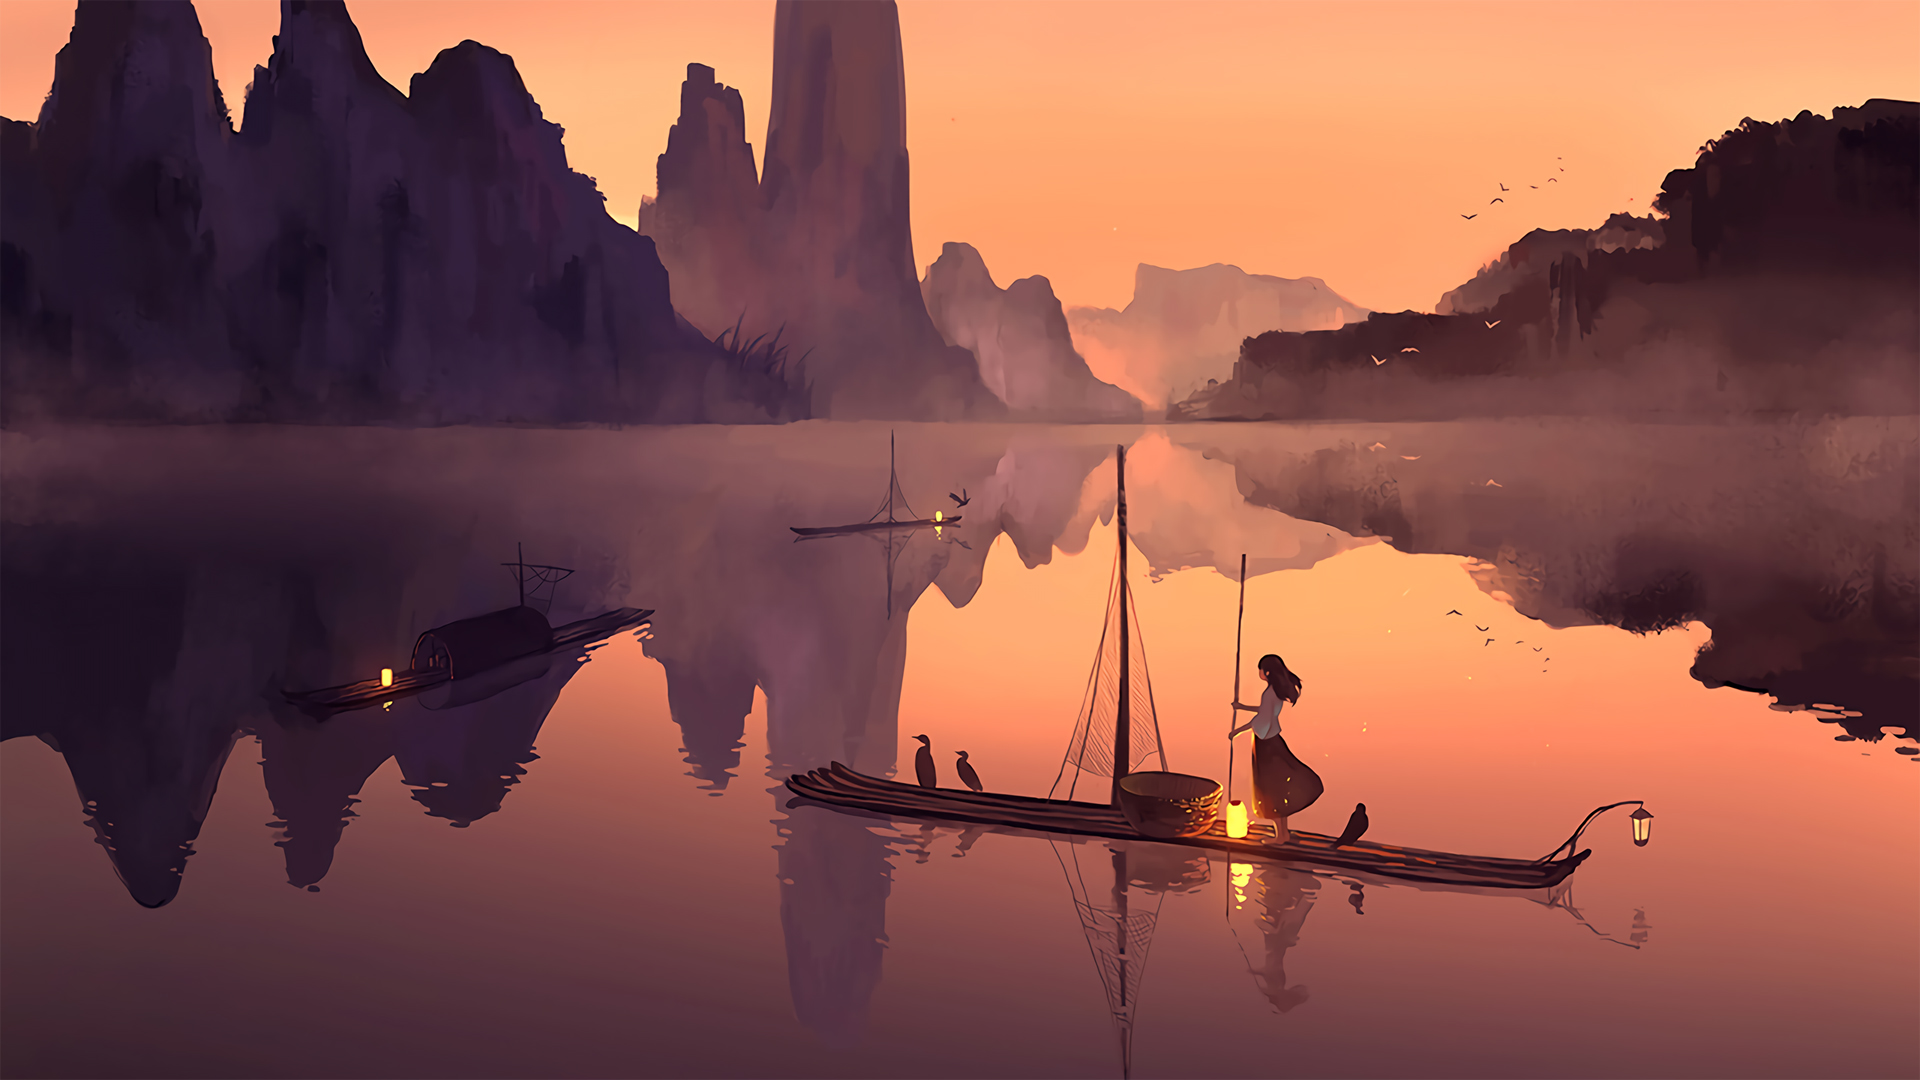 落日下 山水湖泊中 一个划着竹排的渔家少女唯美动漫手绘壁纸图片 <span style='color:red;'>黄昏</span>